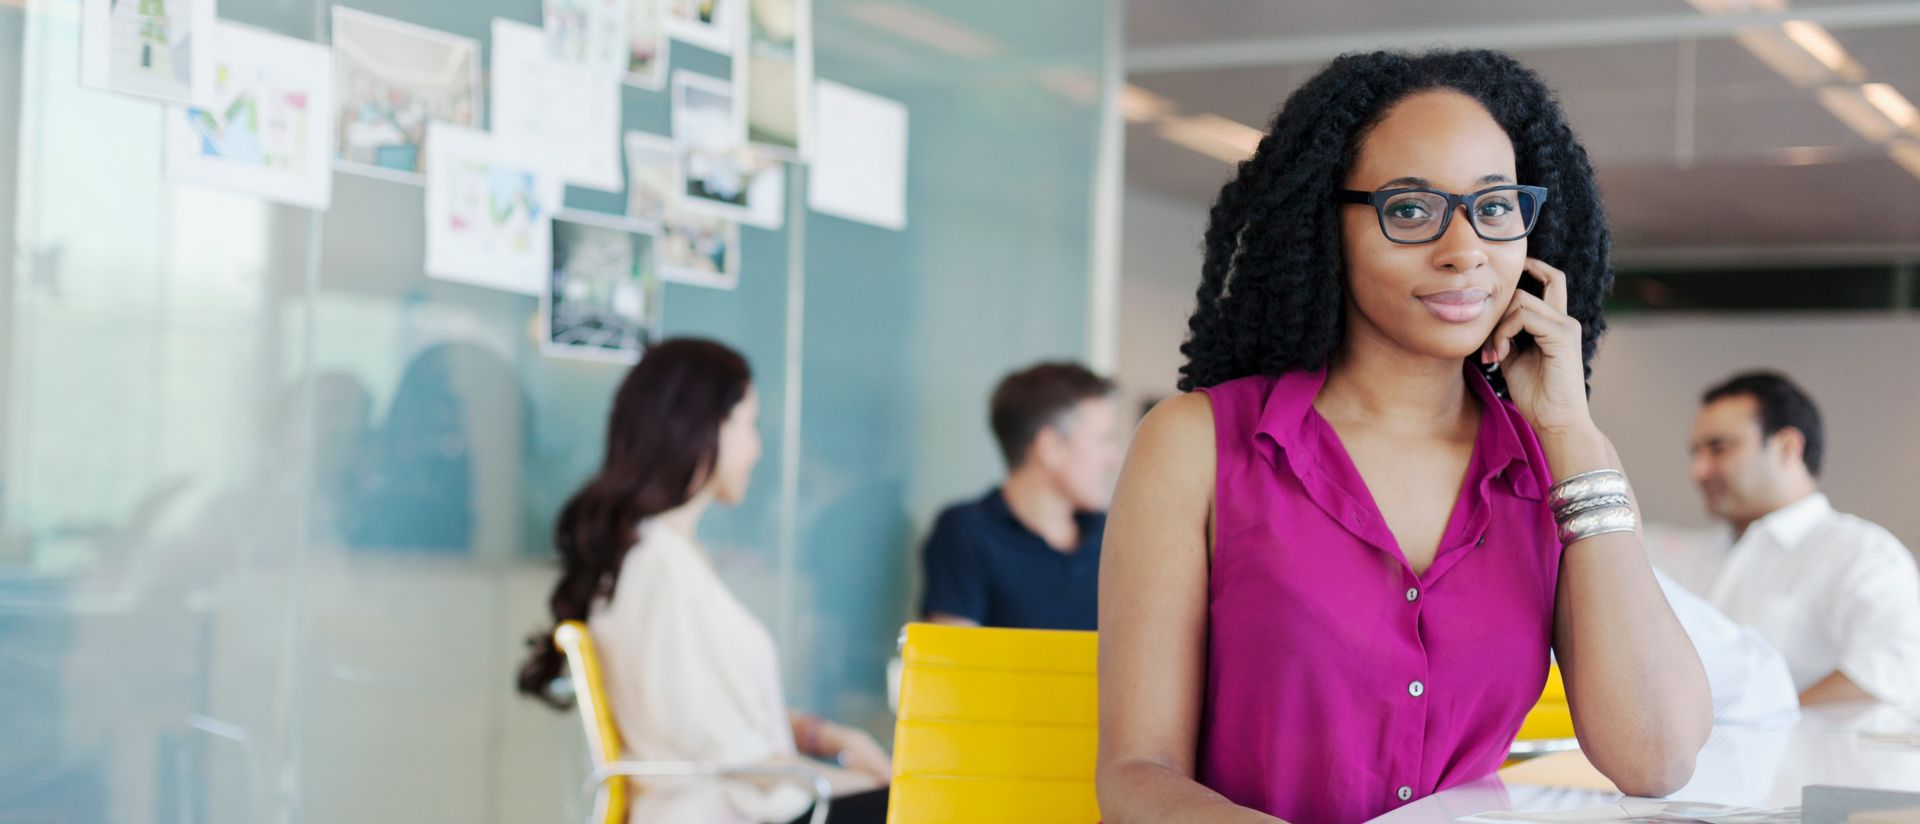 노트북에서 SAP SuccessFactors HCM 솔루션을 사용하여 직원 경험을 조사하는 여성의 이미지